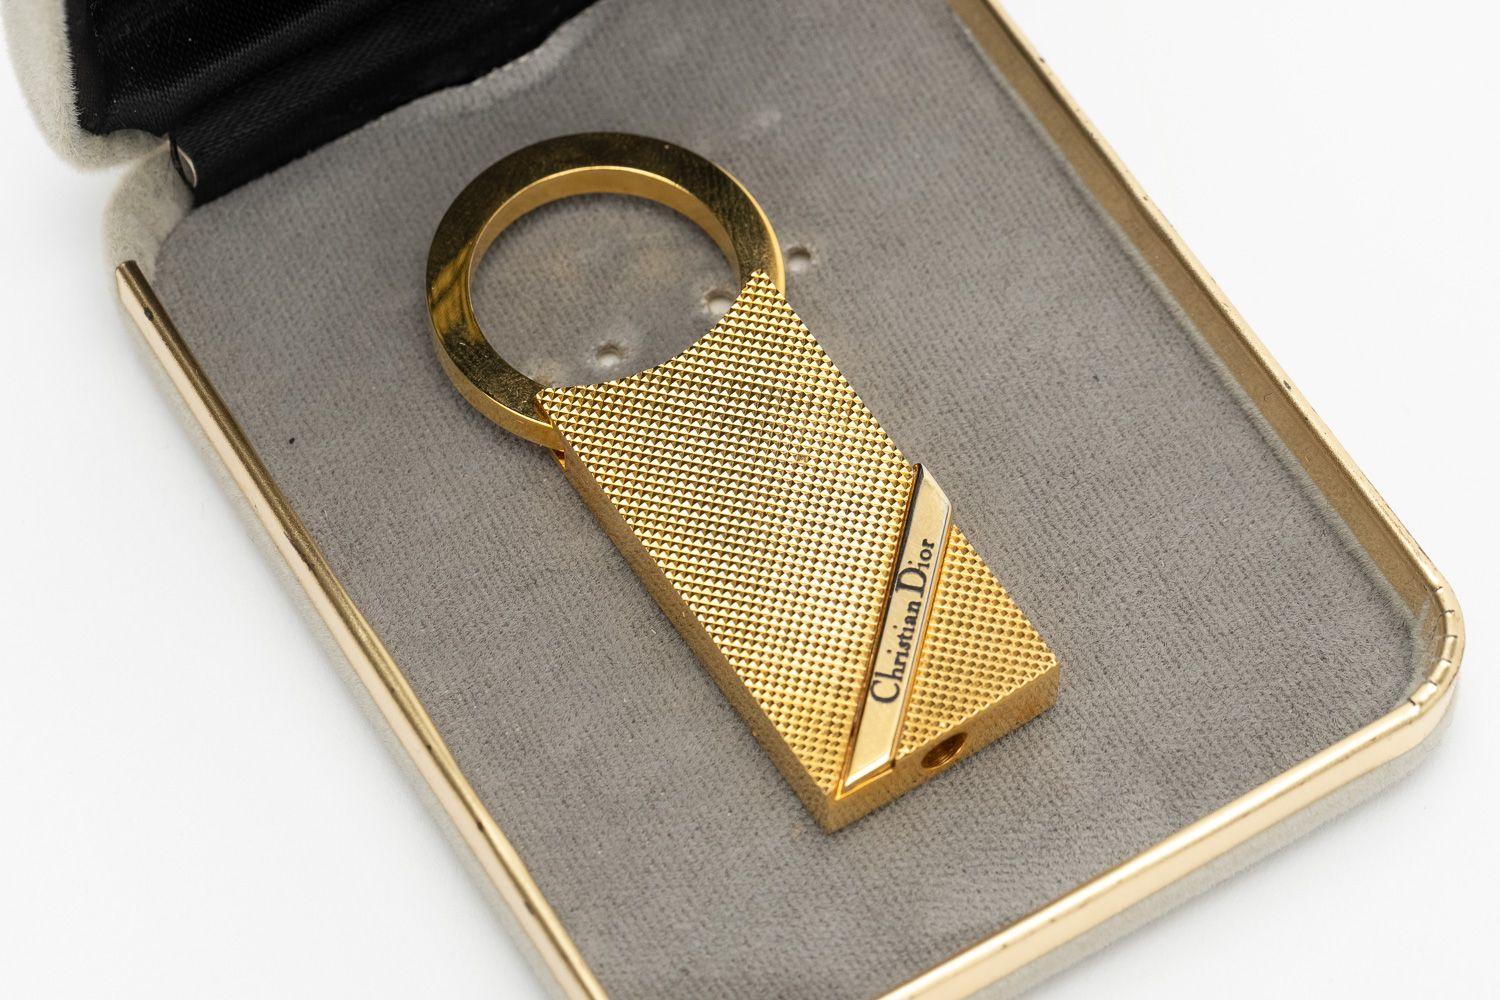 Dior vintage vergoldeter Schlüsselanhänger in sehr gutem Zustand. Seltener Fund.
Kommt mit Originalverpackung.